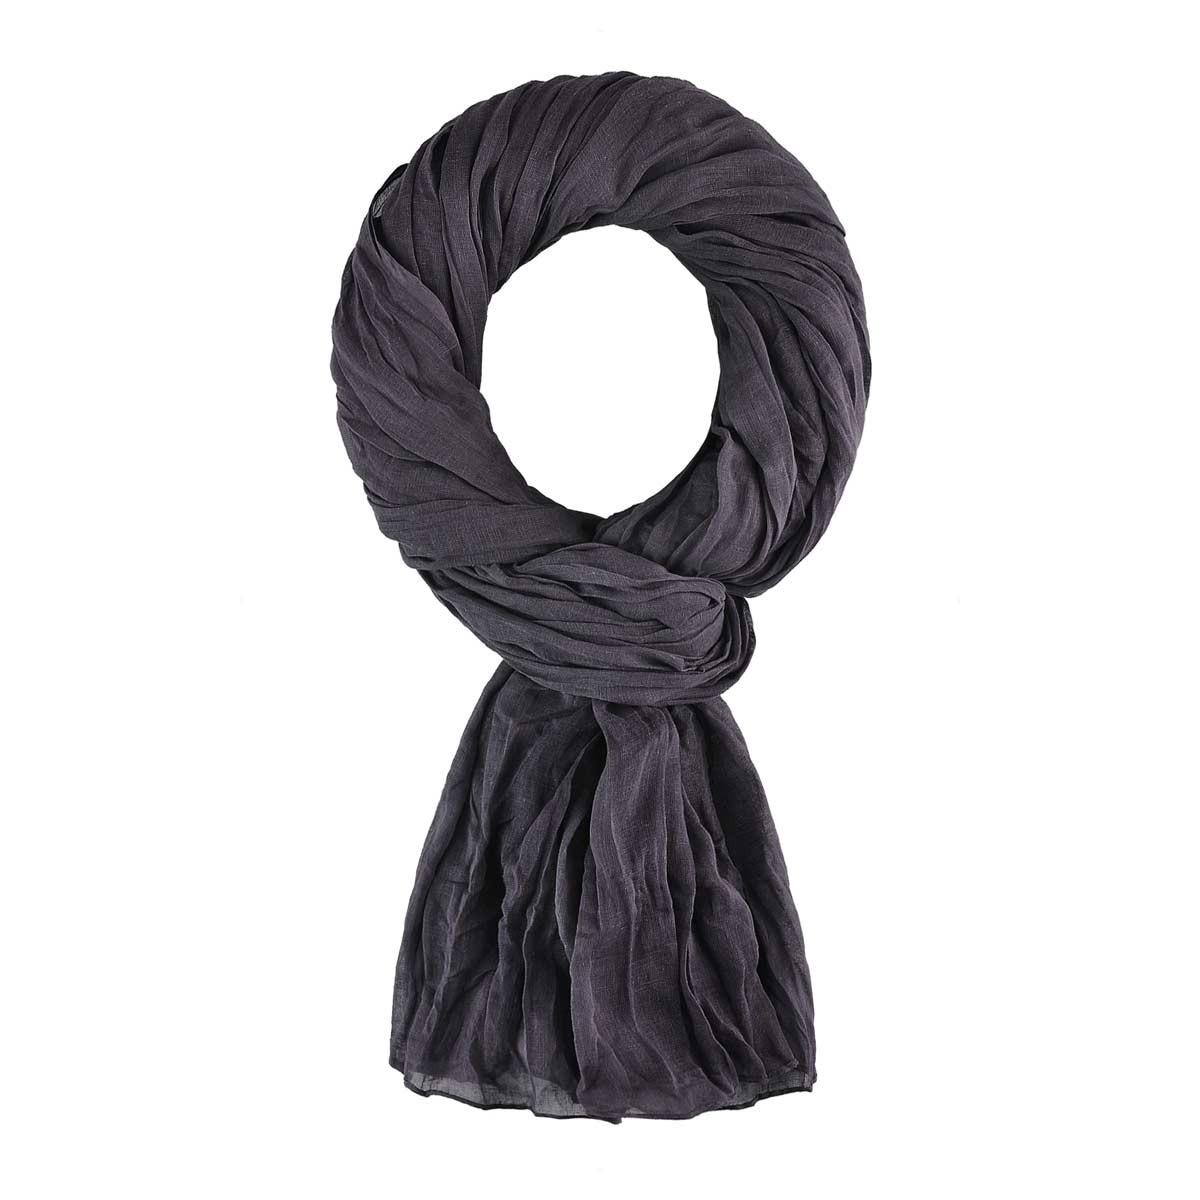 Foulard en coton de couleur unie, foulard noir uni, bandana gris